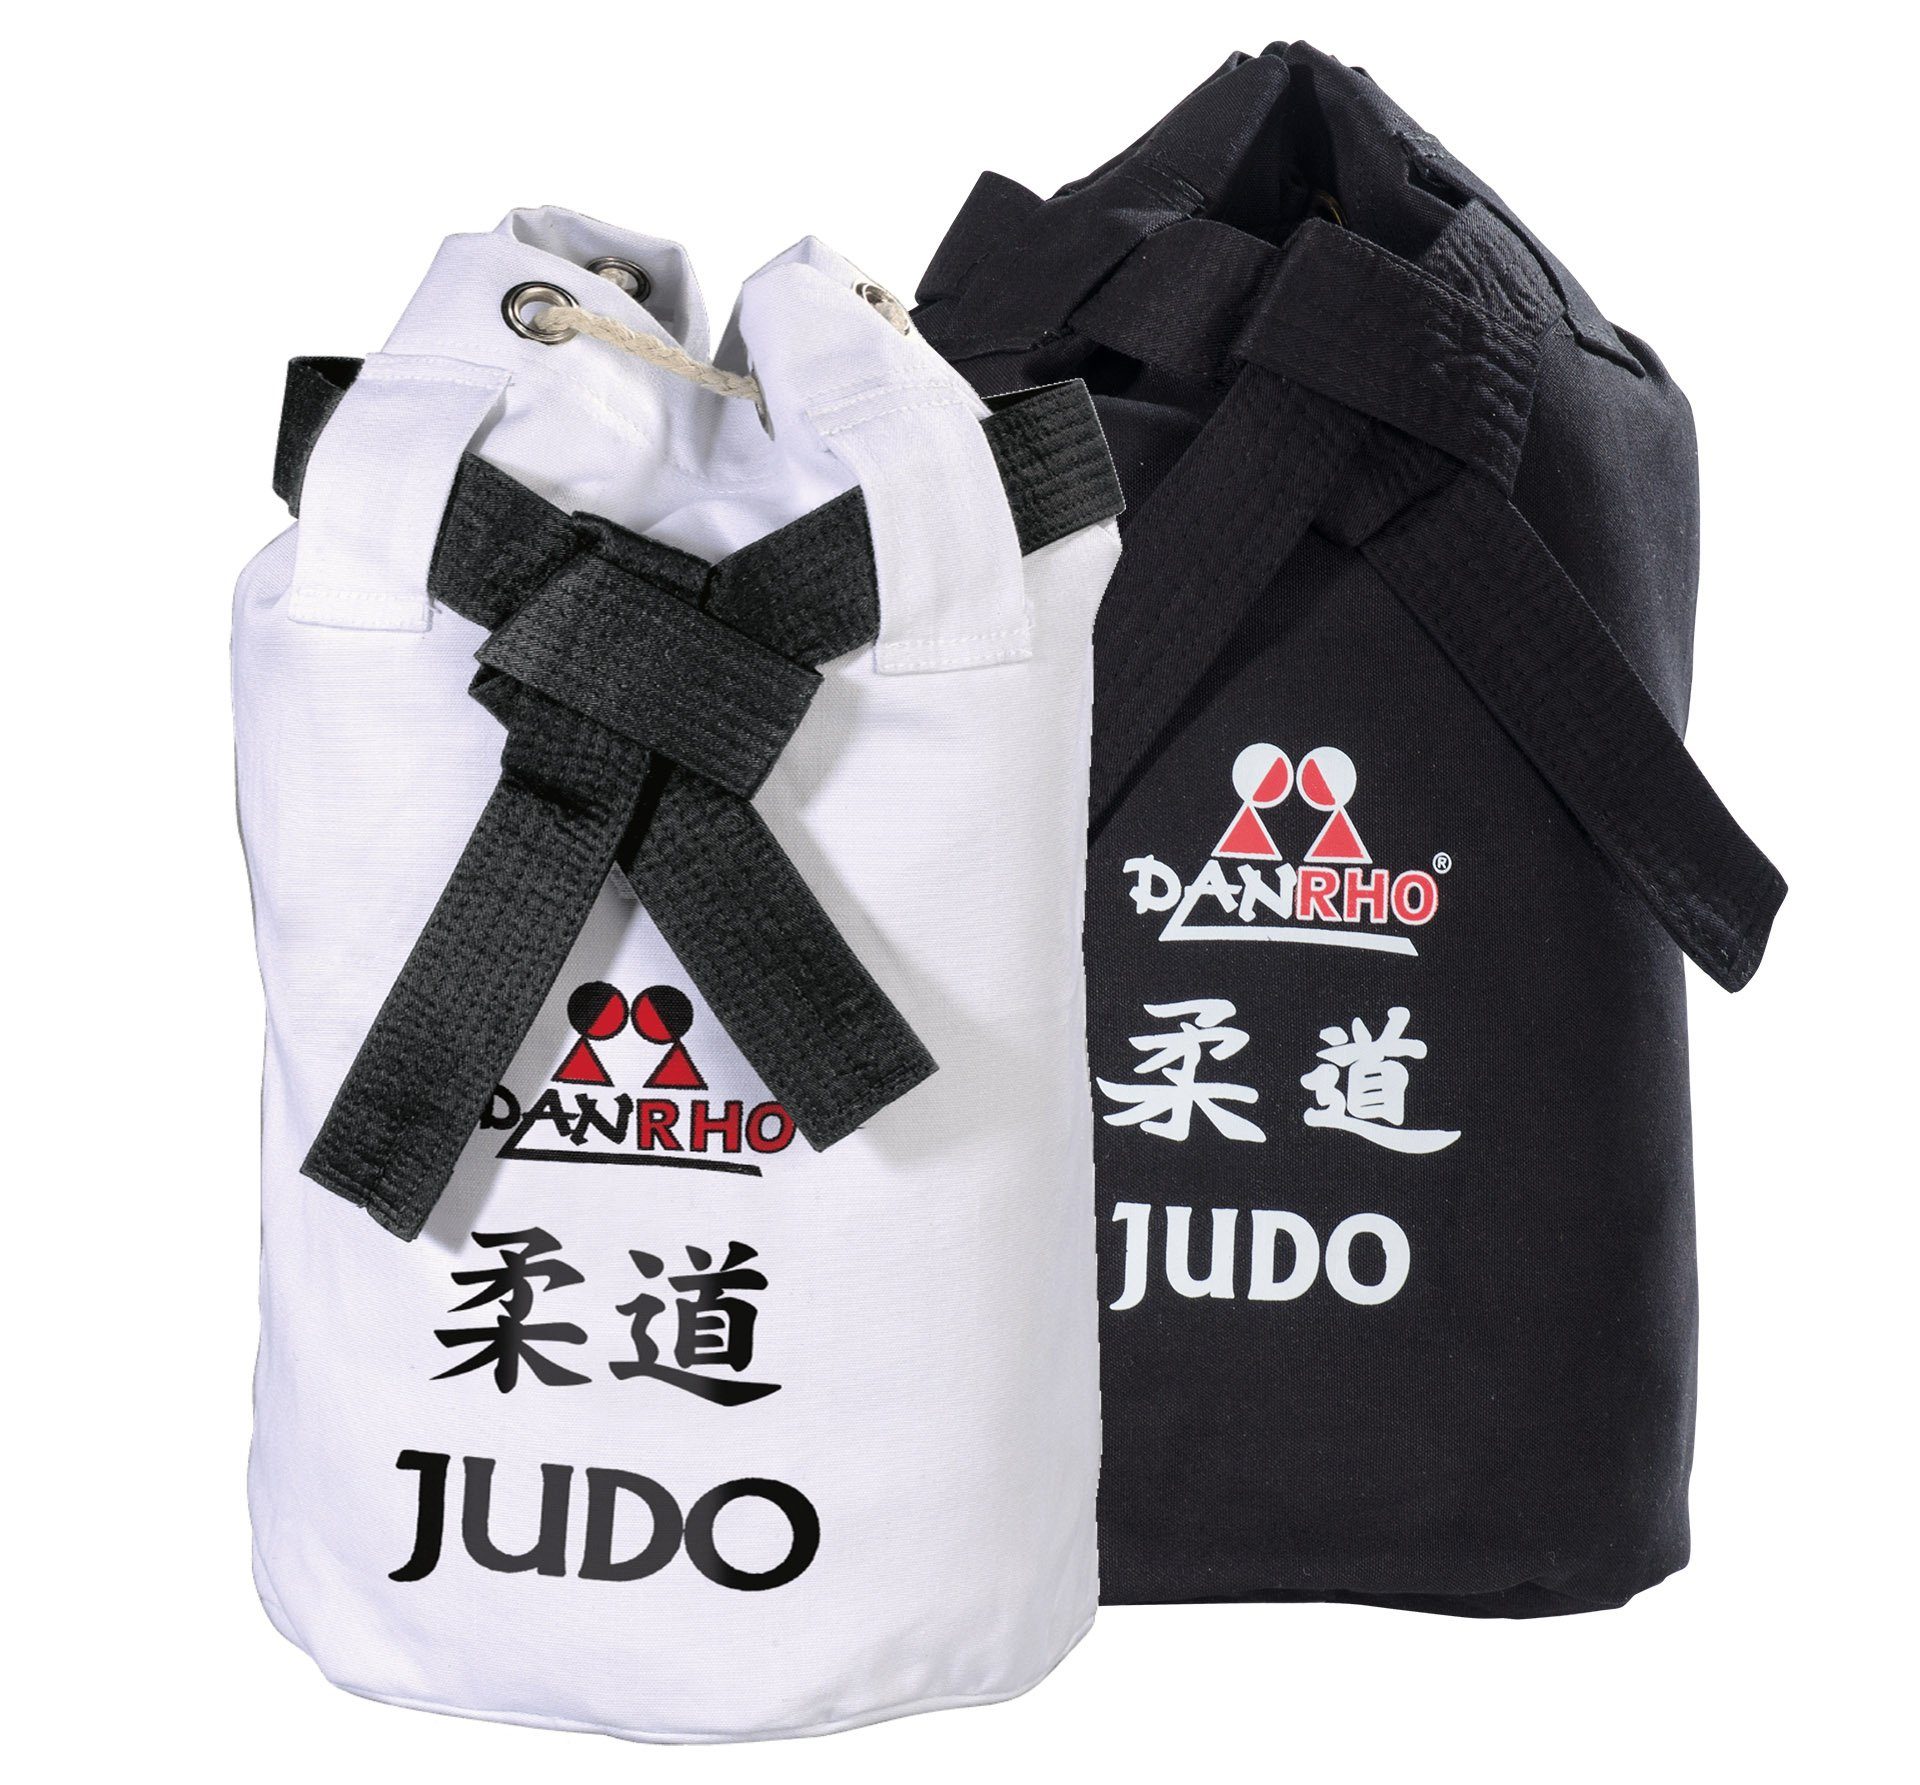 Danrho Sporttasche Judo Seesack Beutel Kinder Rucksack Turnbeutel (Baumwolle, Kordelzug Schnellverschluß), schwarz oder weiss, Budogürtel Optik weiß